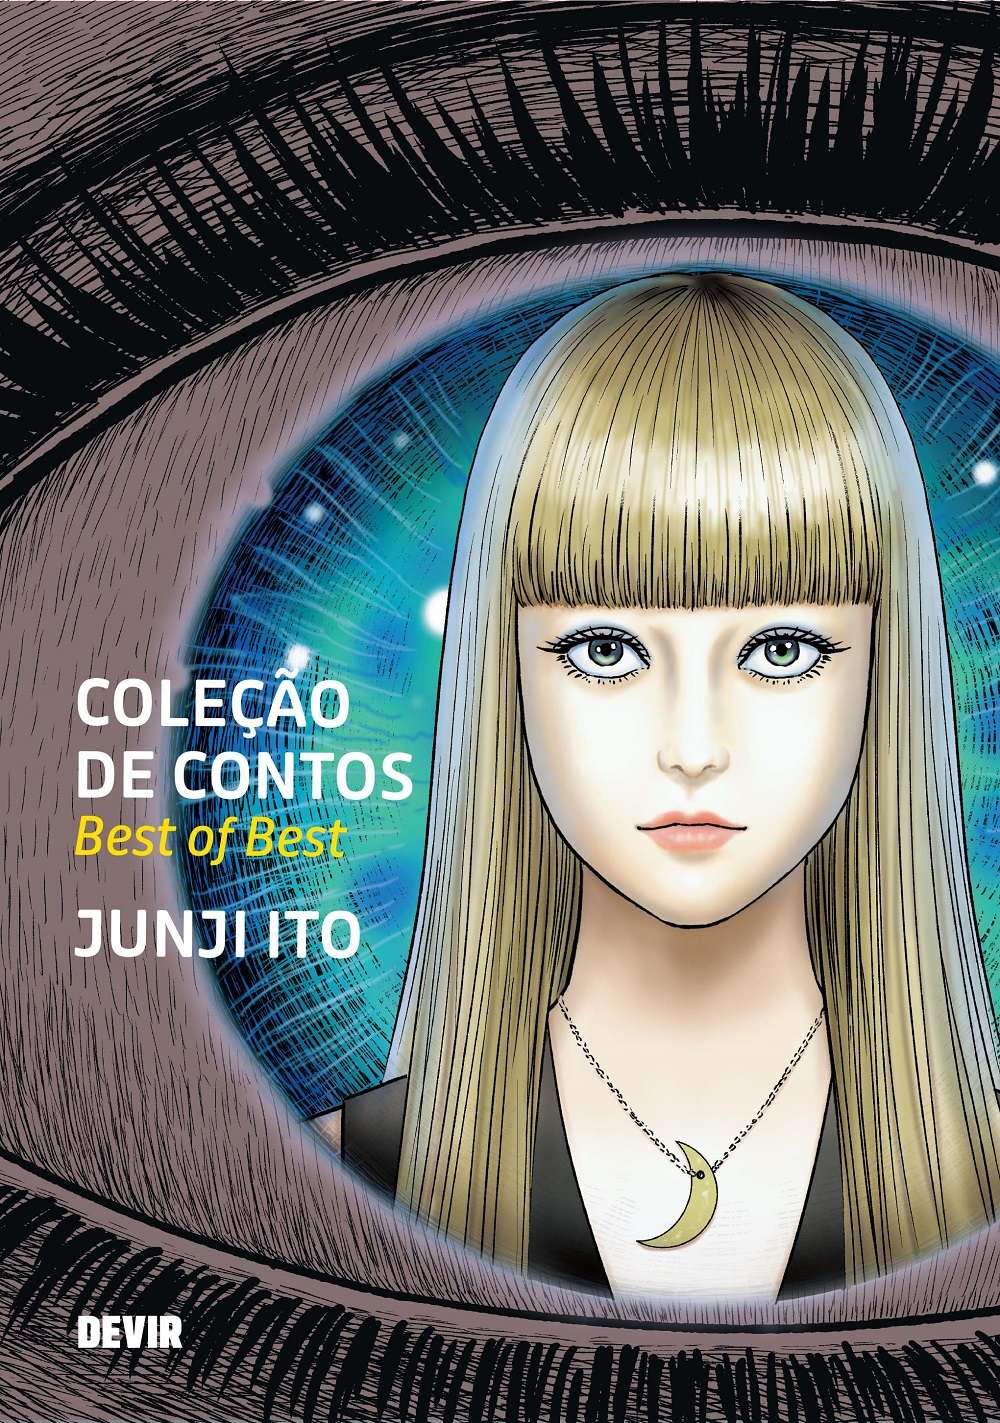 Coleção de Contos Best of Best de Junji Ito pela Editora Devir